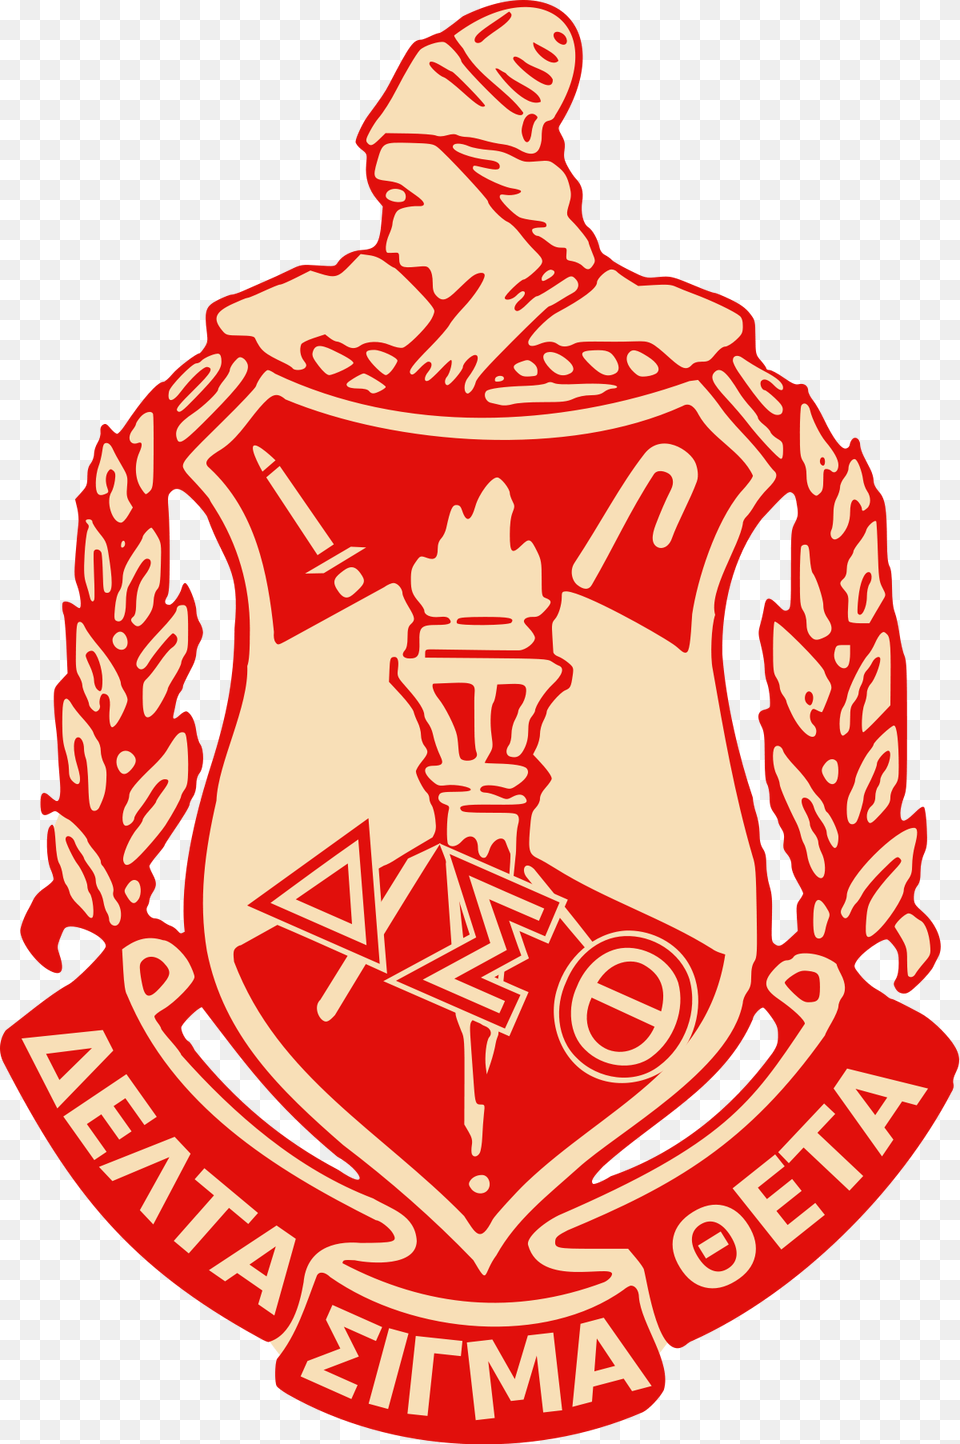 Delta Sigma Theta Crest, Emblem, Symbol, Logo, Badge Free Png Download